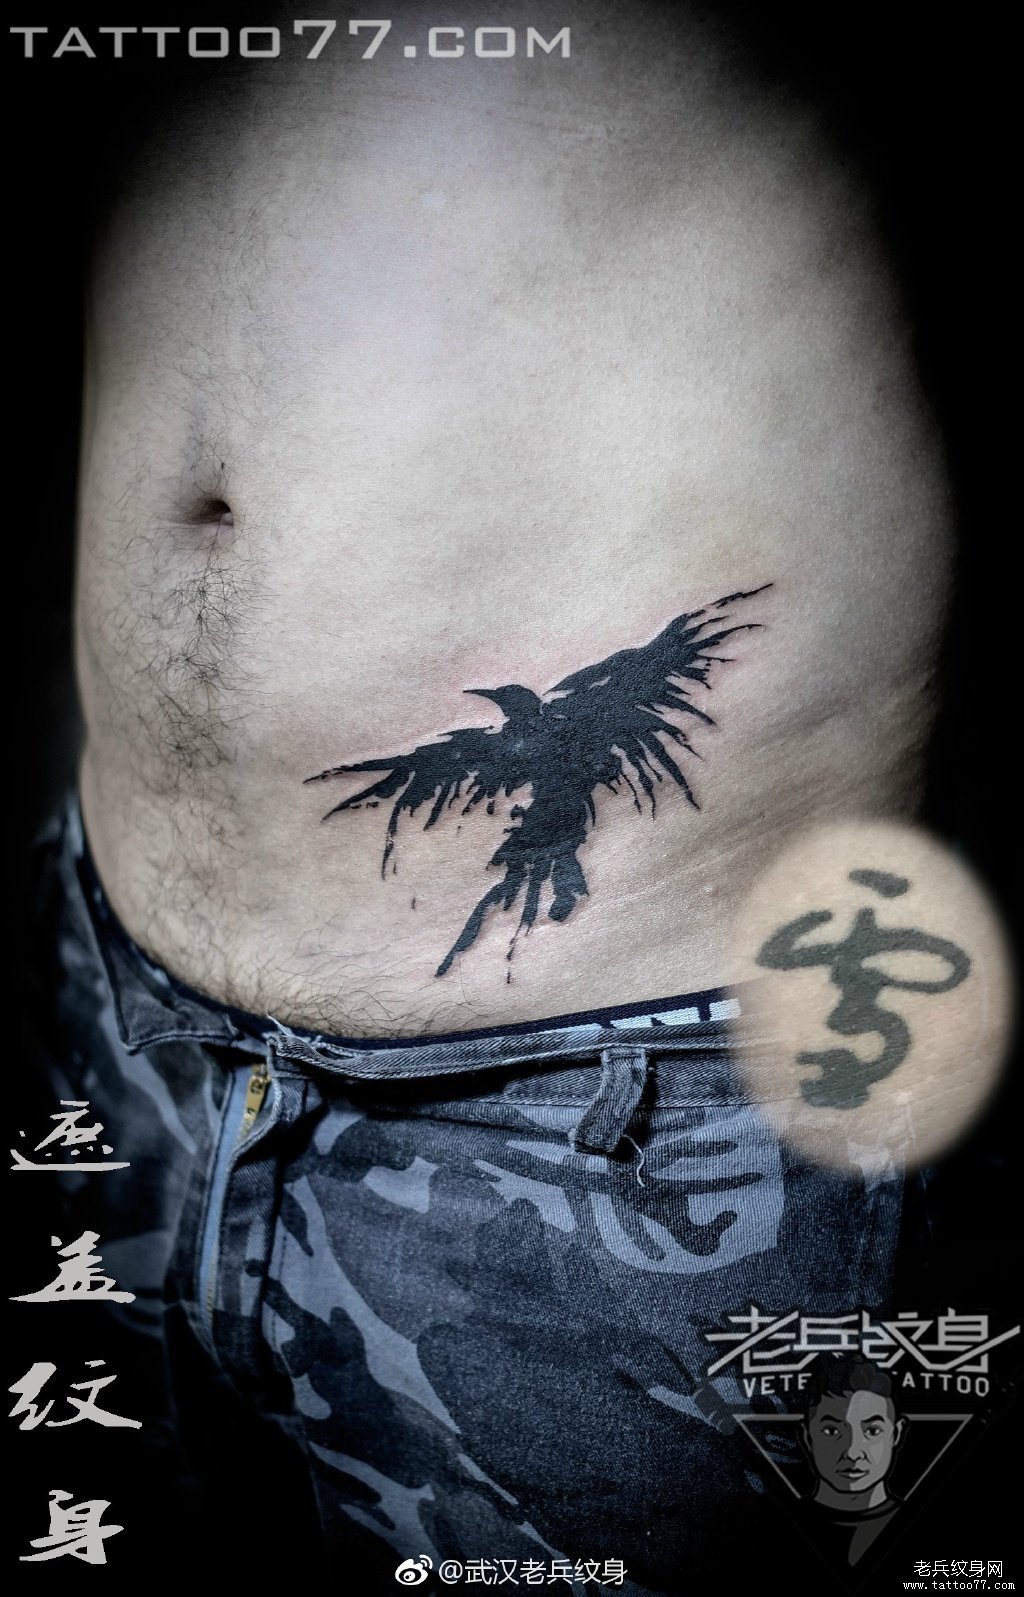 腹部泼墨老鹰纹身图案作品遮盖旧纹身